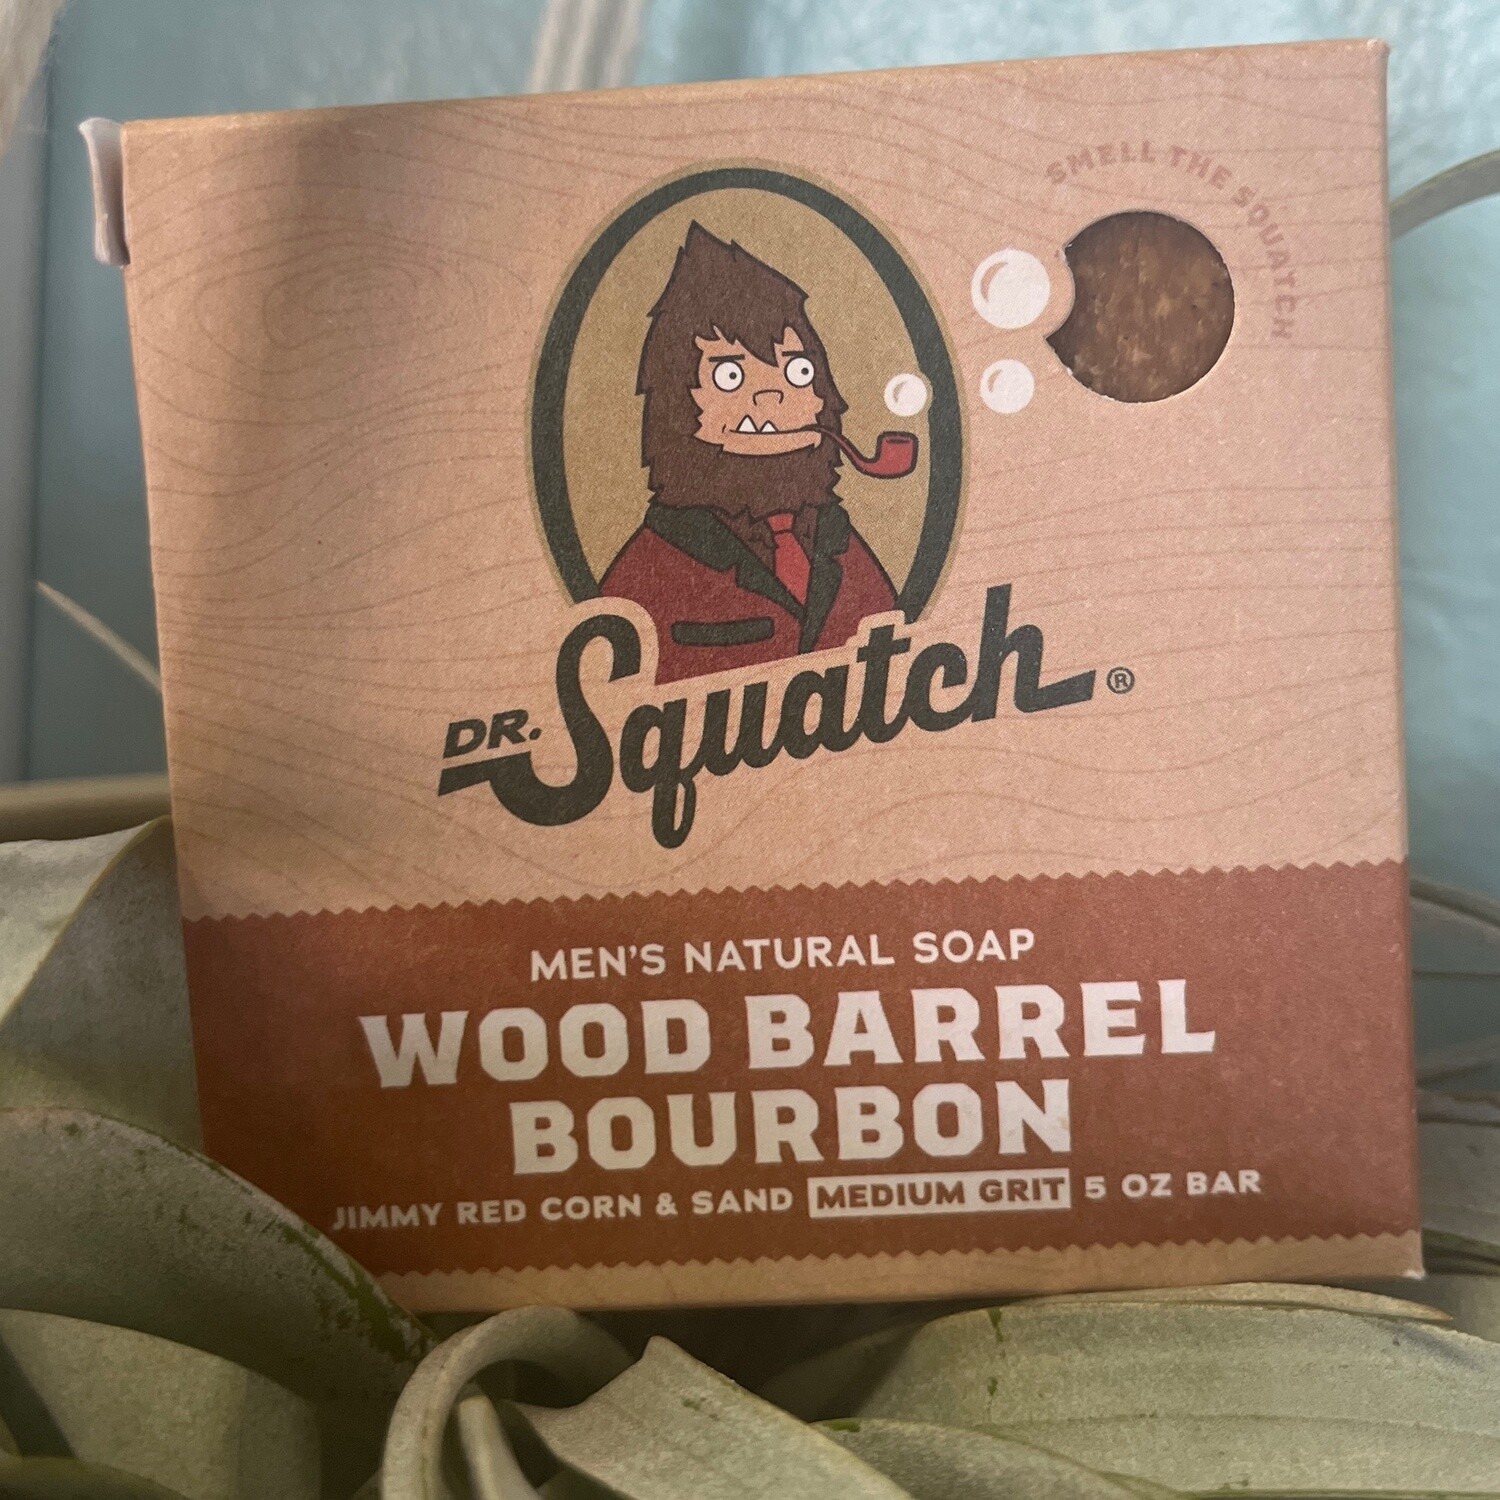 Wood Barrel Bourbon Soap